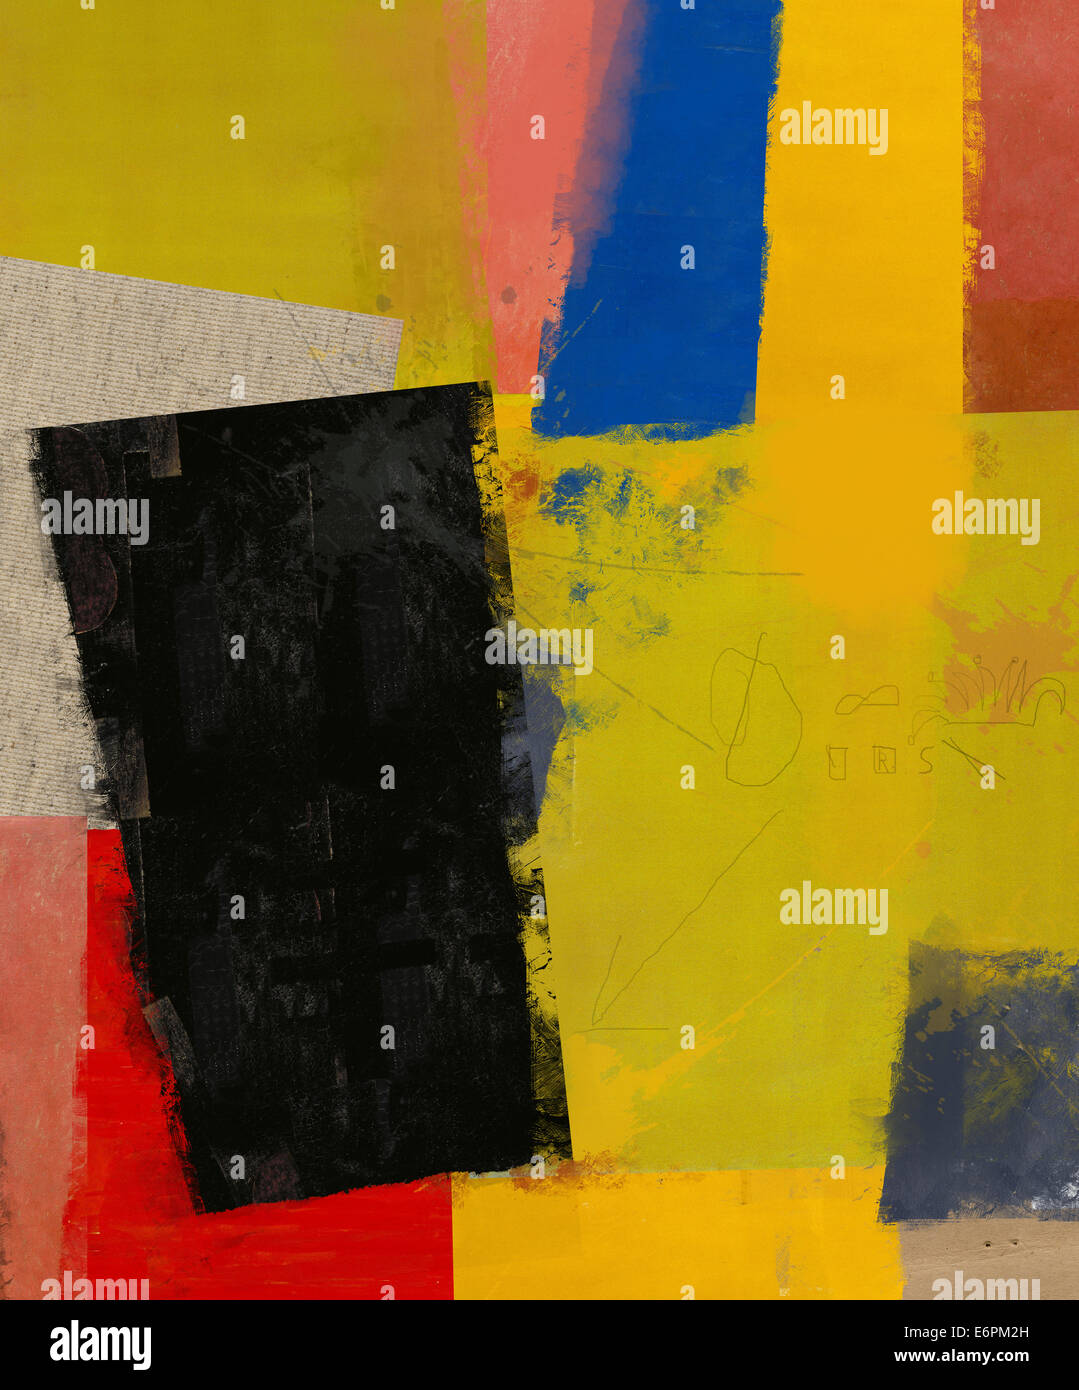 Abstrakte Komposition besteht aus einer Vielzahl von farbigen Schichten Stockfoto